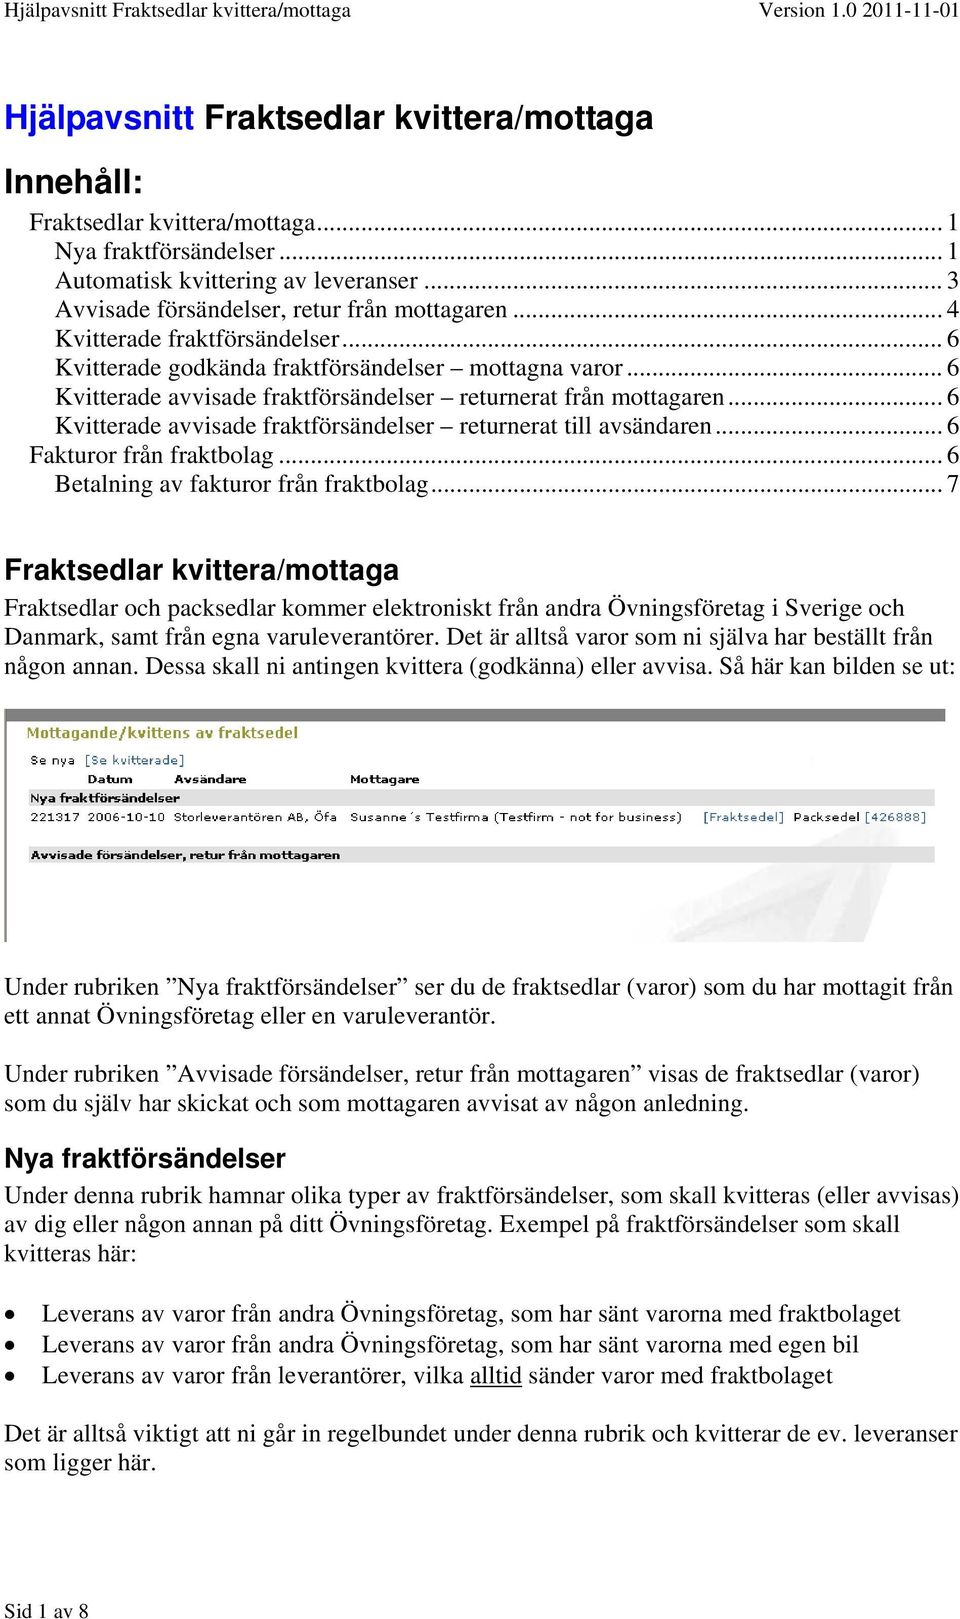 Hjälpavsnitt Fraktsedlar kvittera/mottaga Innehåll: - PDF Gratis nedladdning